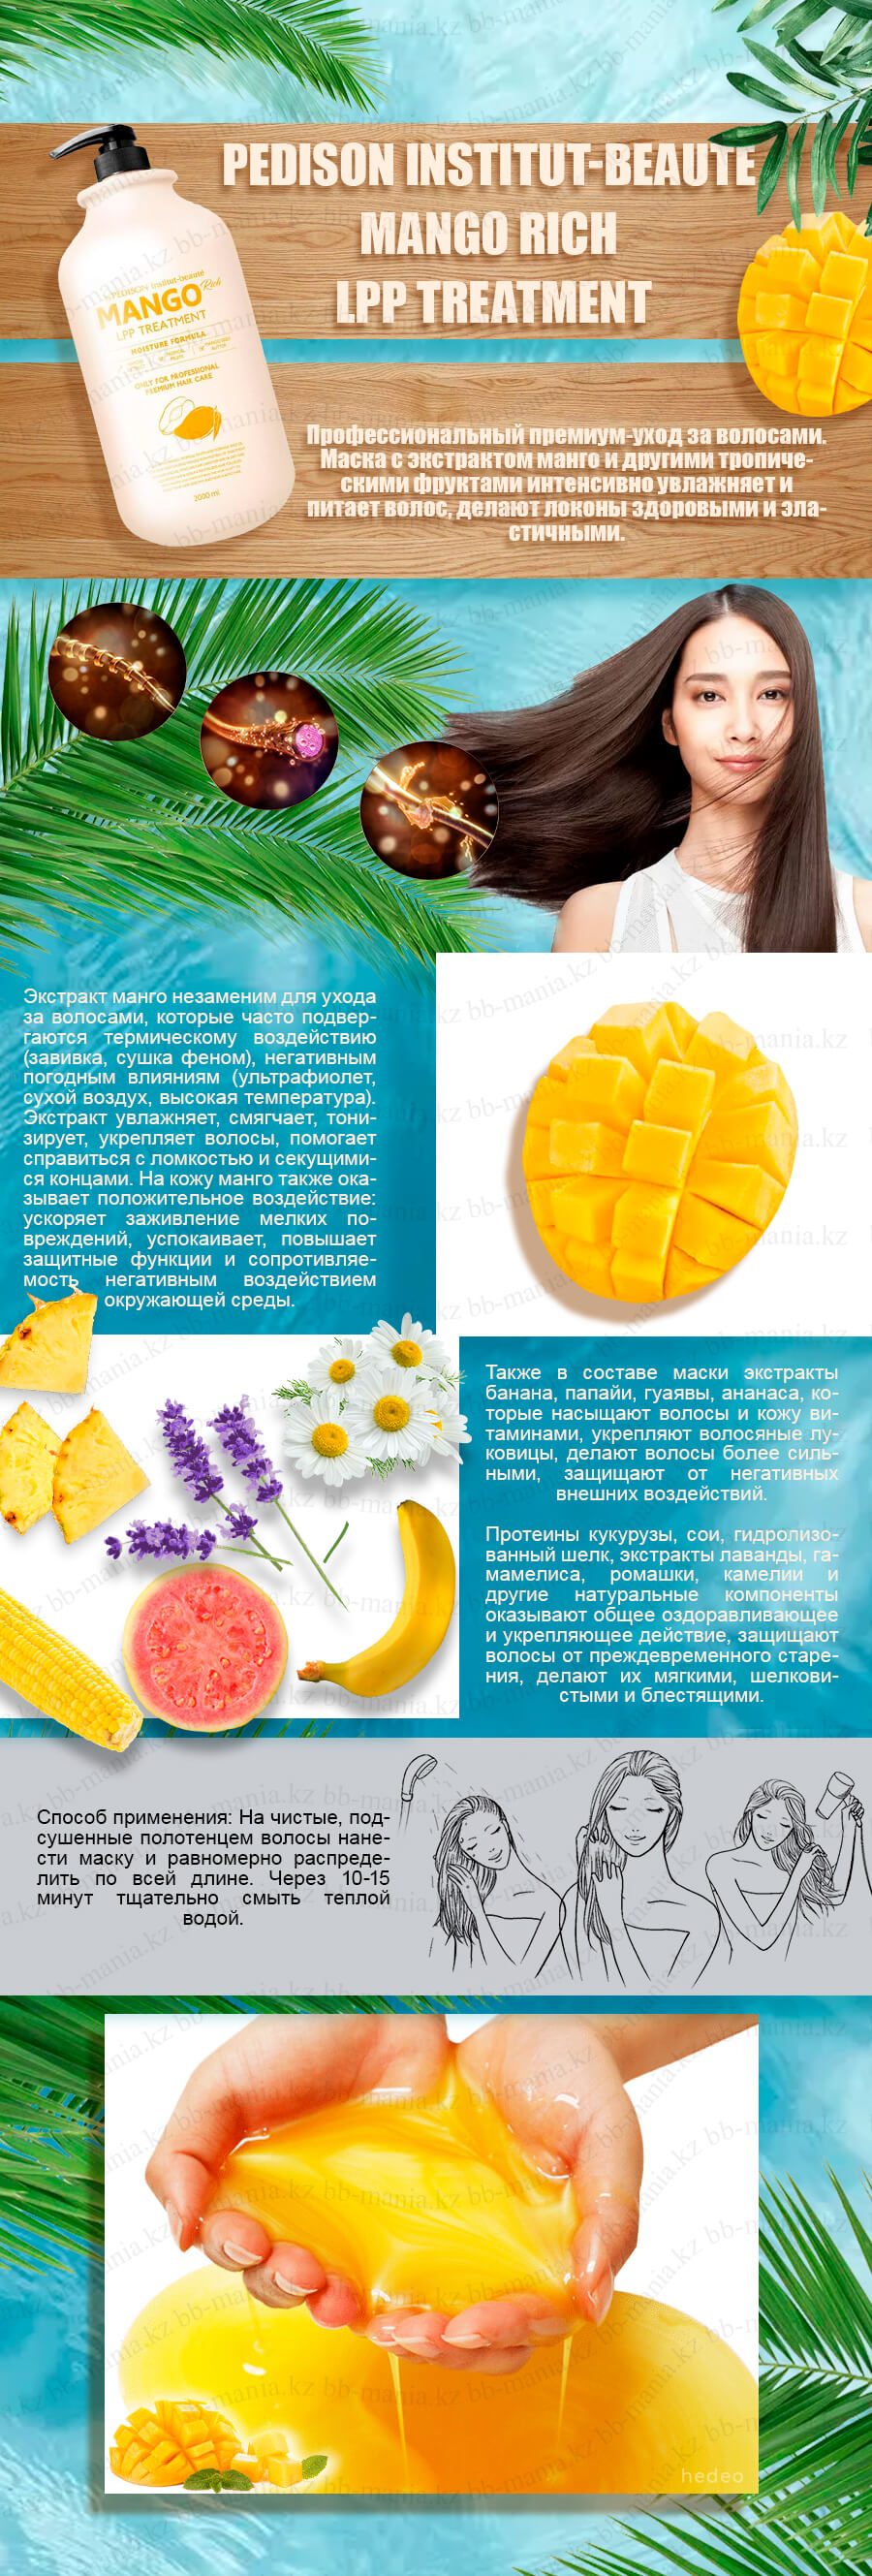 Pedison-Institut-beaute-Mango-Rich-LPP-Treatment-[EVAS] (1)